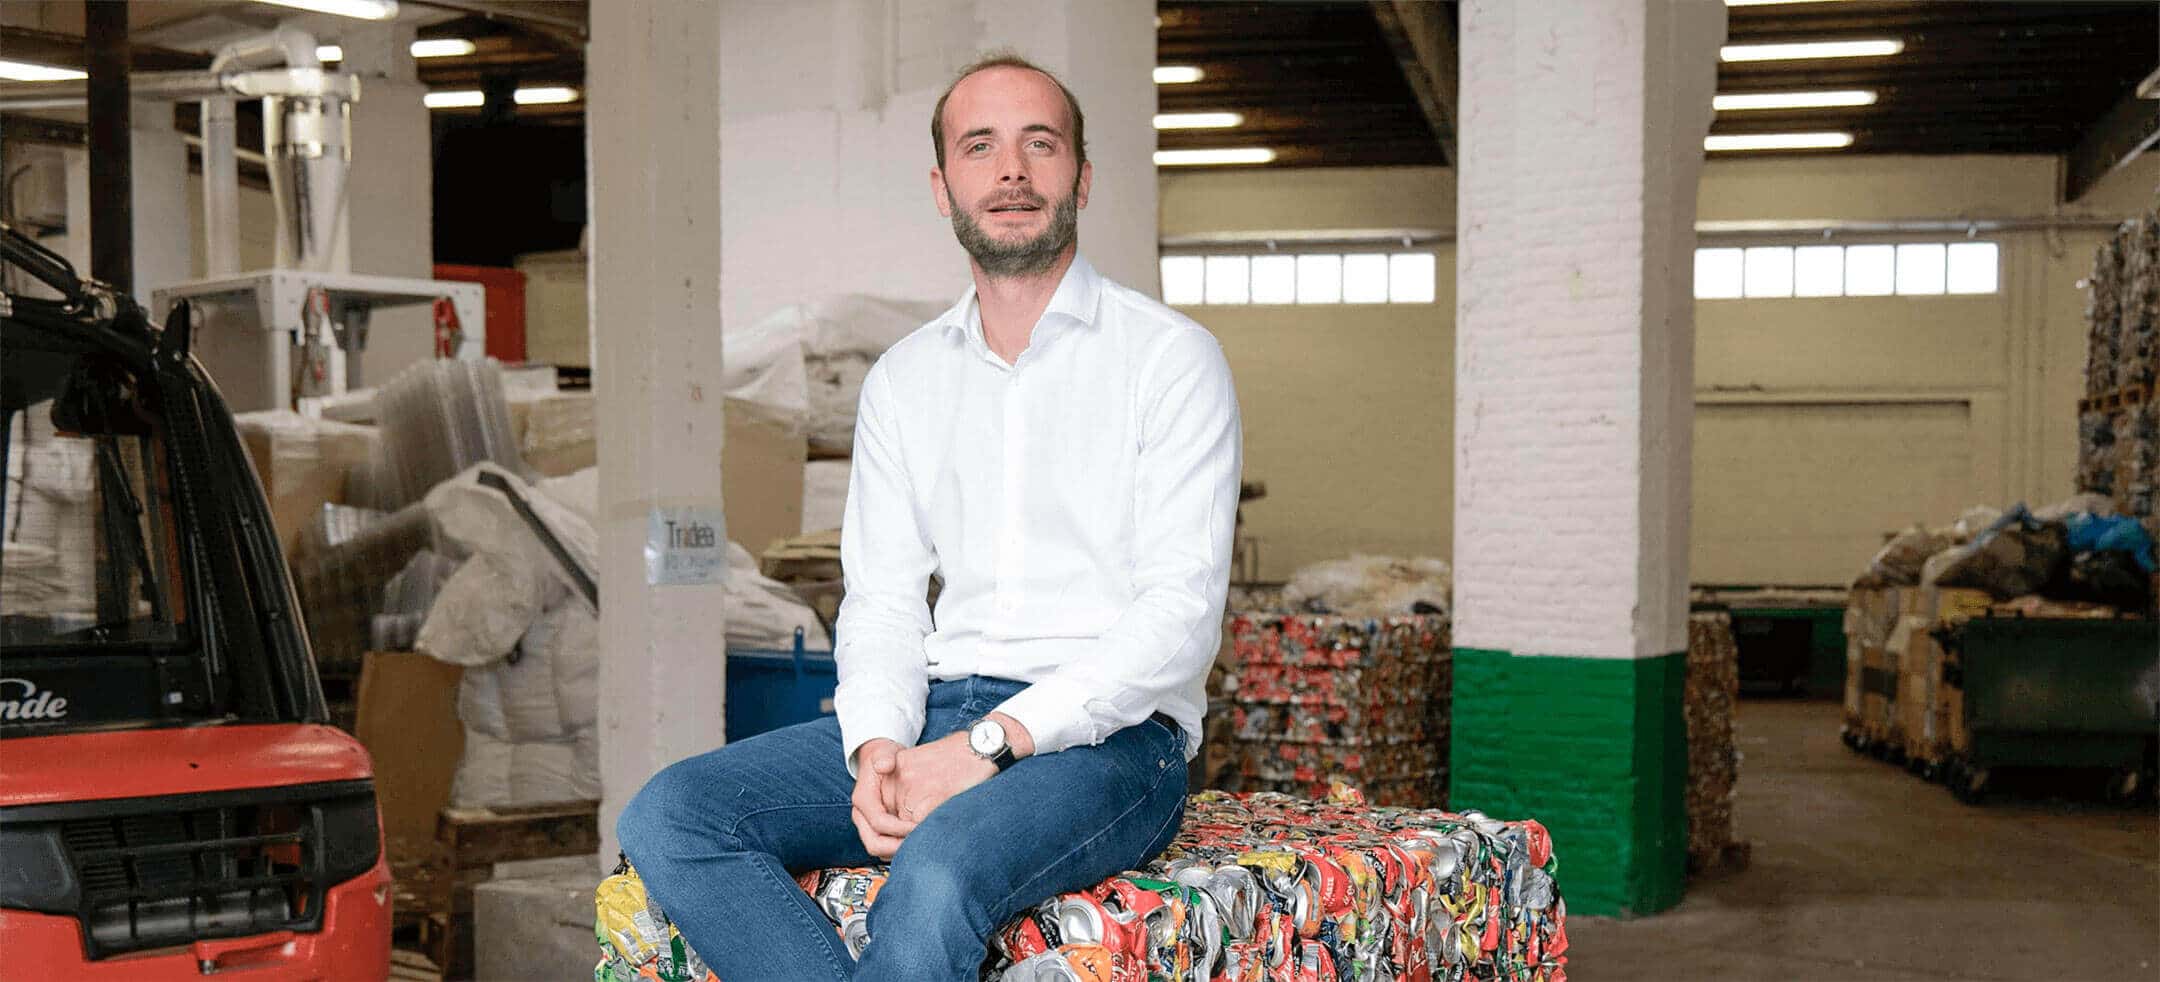 Jérôme Pickarda, meer dan 20 jaar voor alle afvaluitdagingen